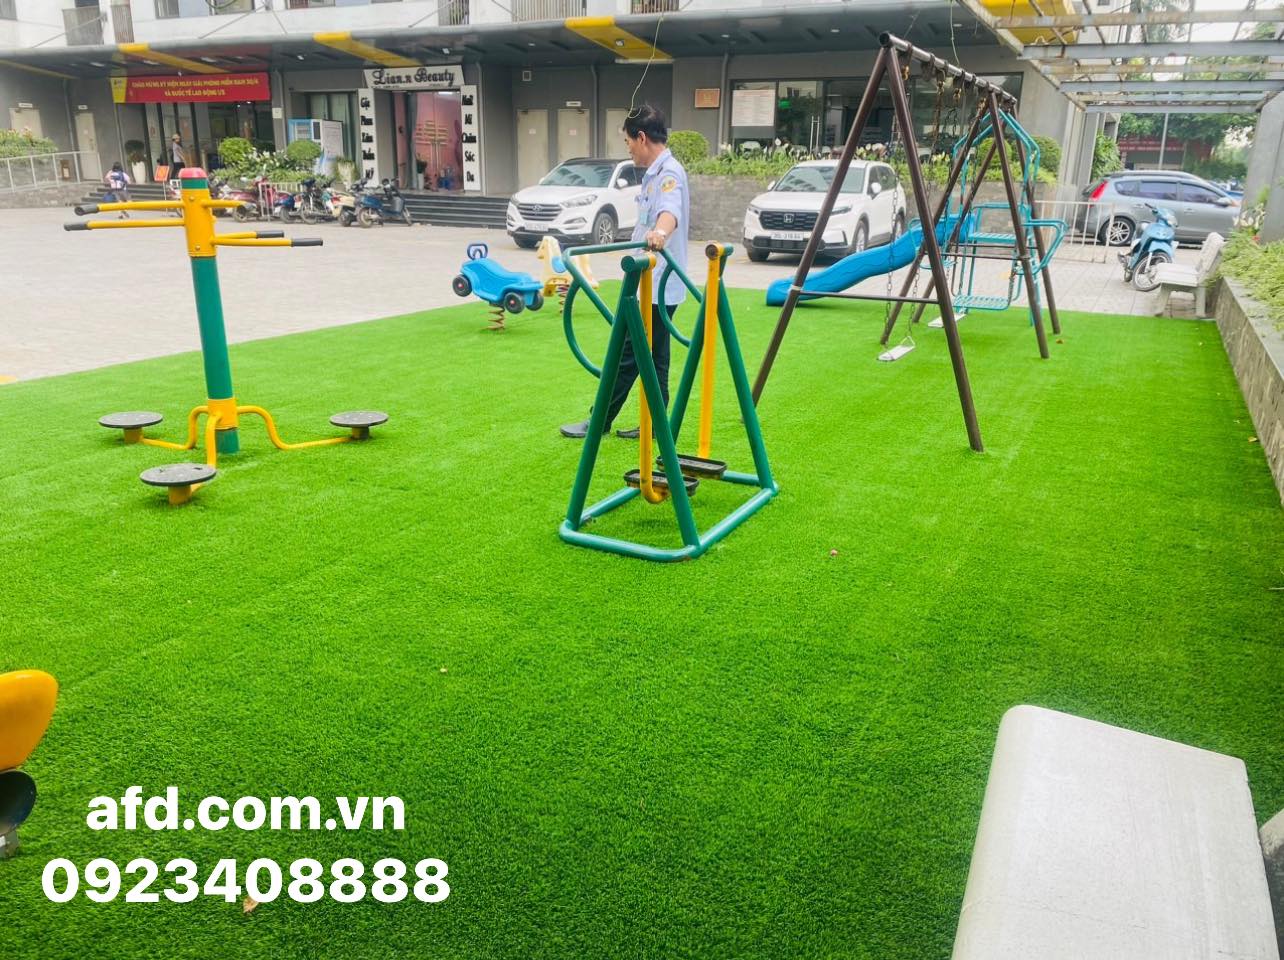 Hoàn thiện thi công cỏ nhân tạo sân khu vui chơi chung cư Rainbow Linh Đàm